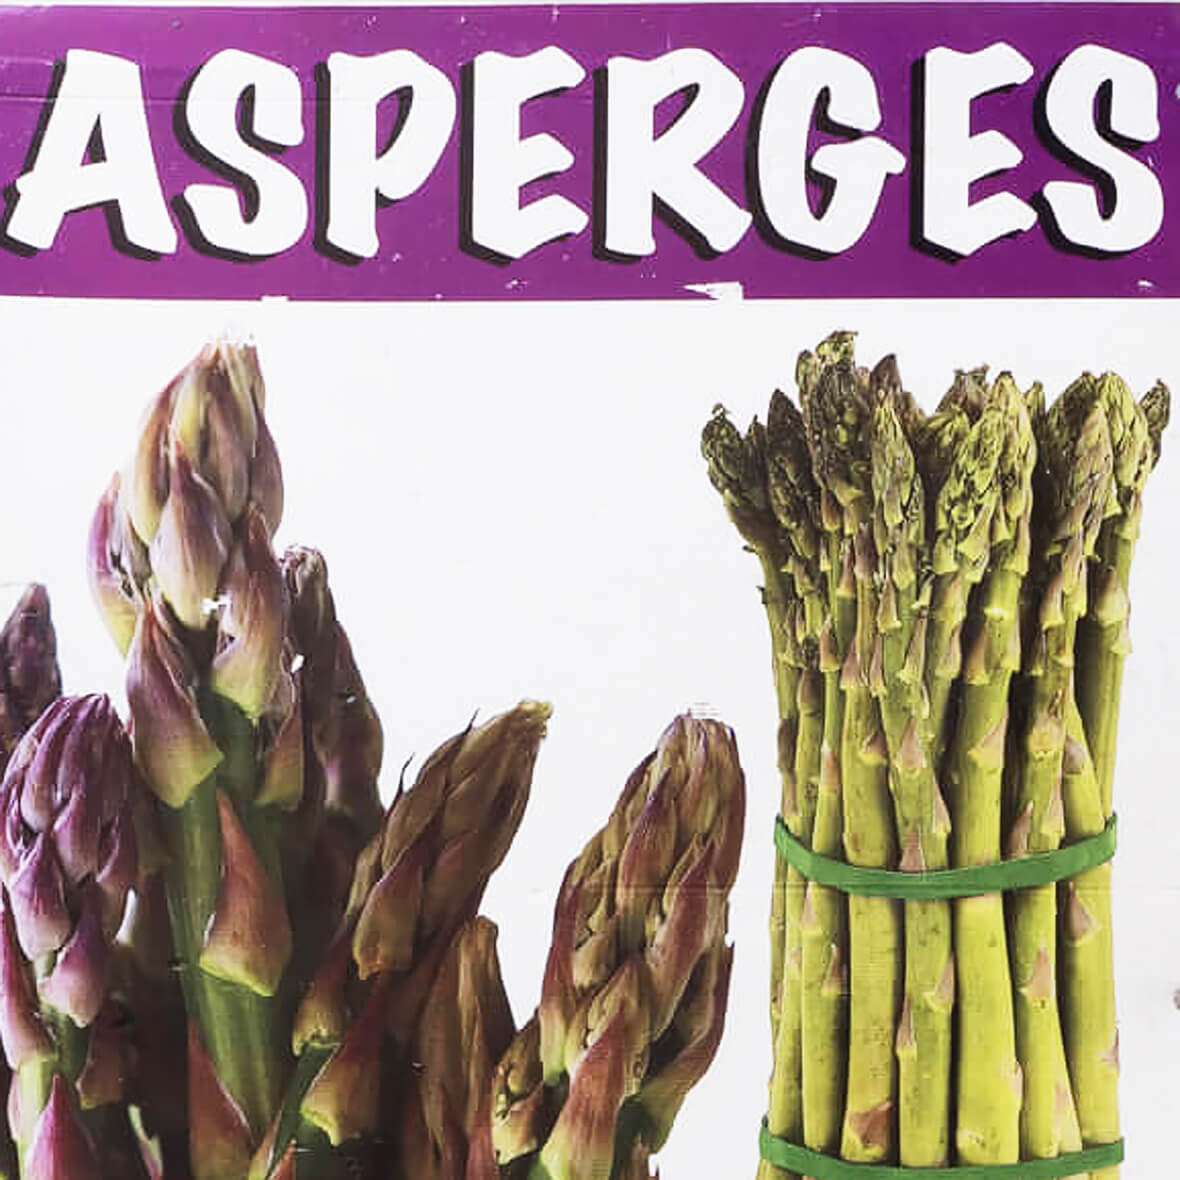 "Asparagus" sign